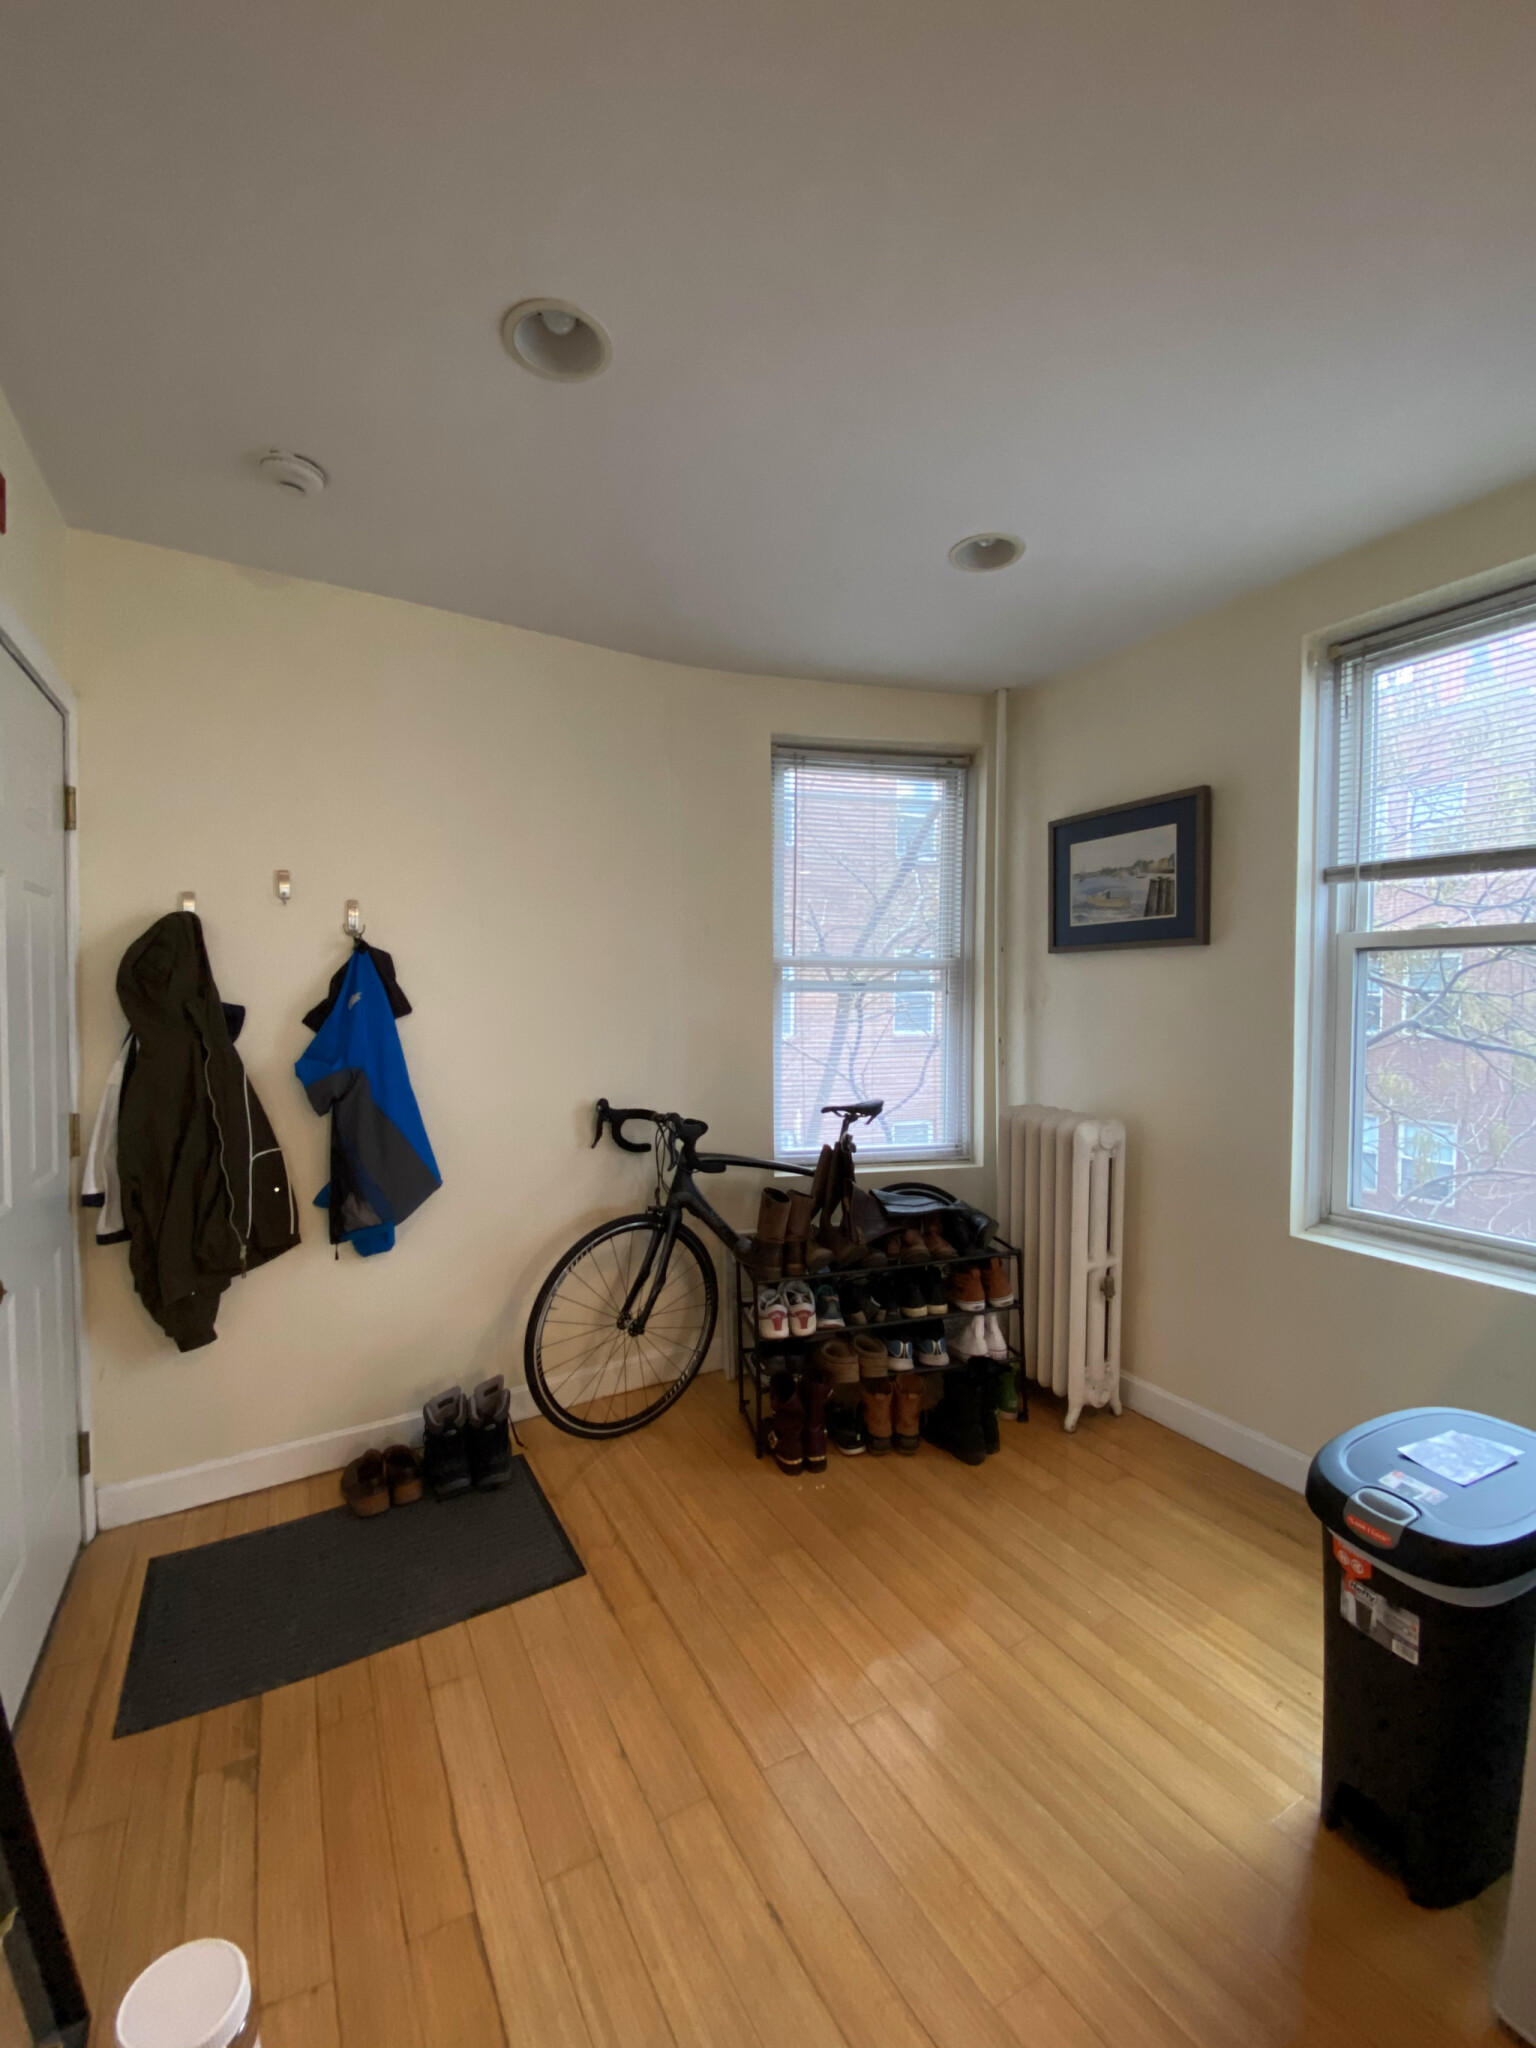 Photos of apartment on Joy St.,Boston MA 02114